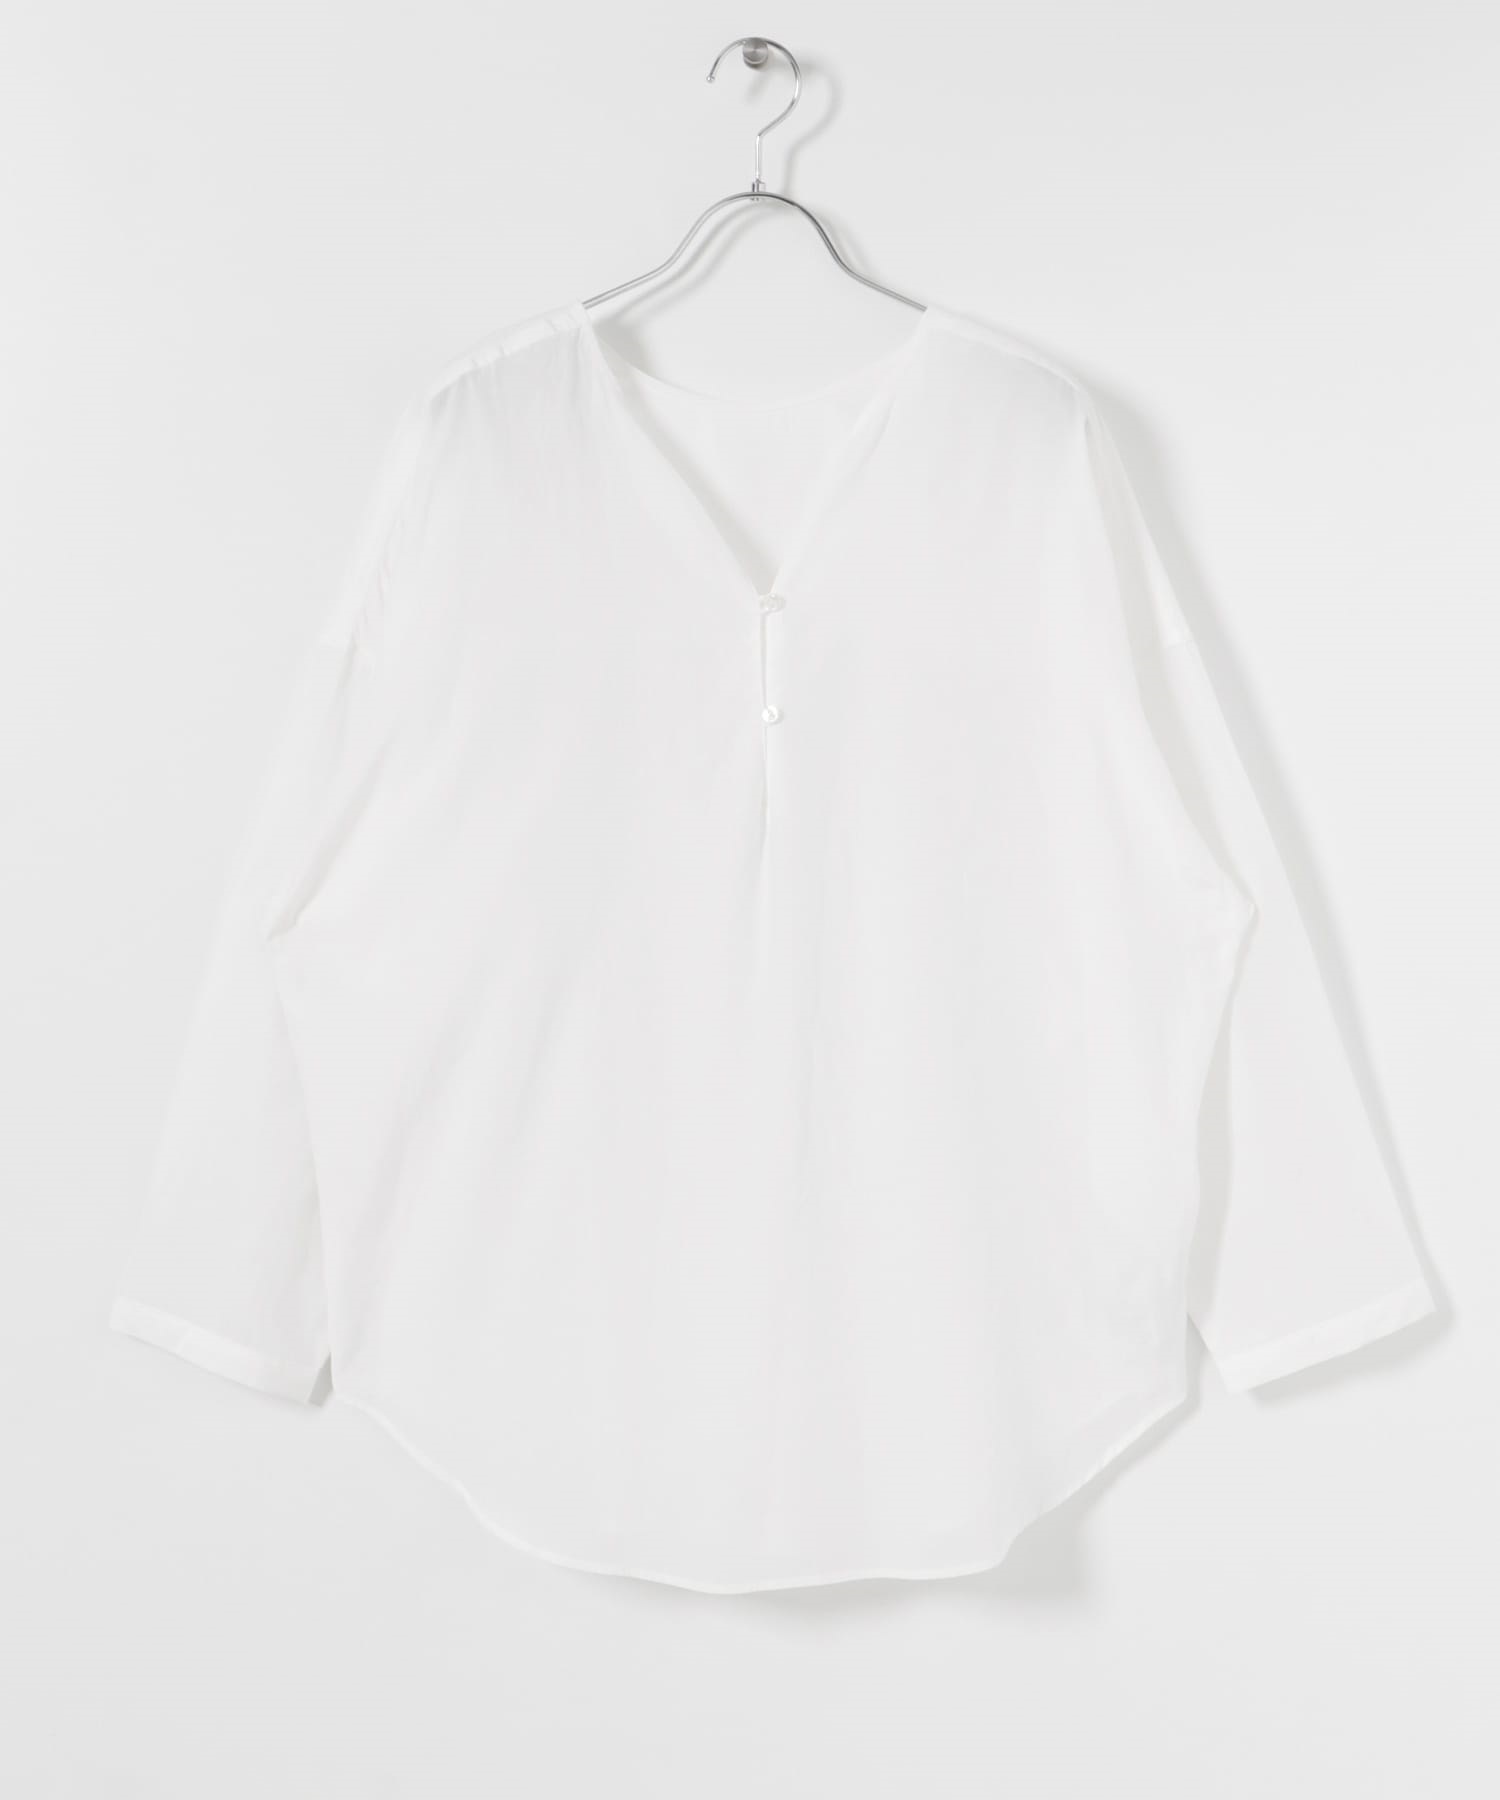 V字領緣寬版襯衫(米色-FREE-OFF WHITE)